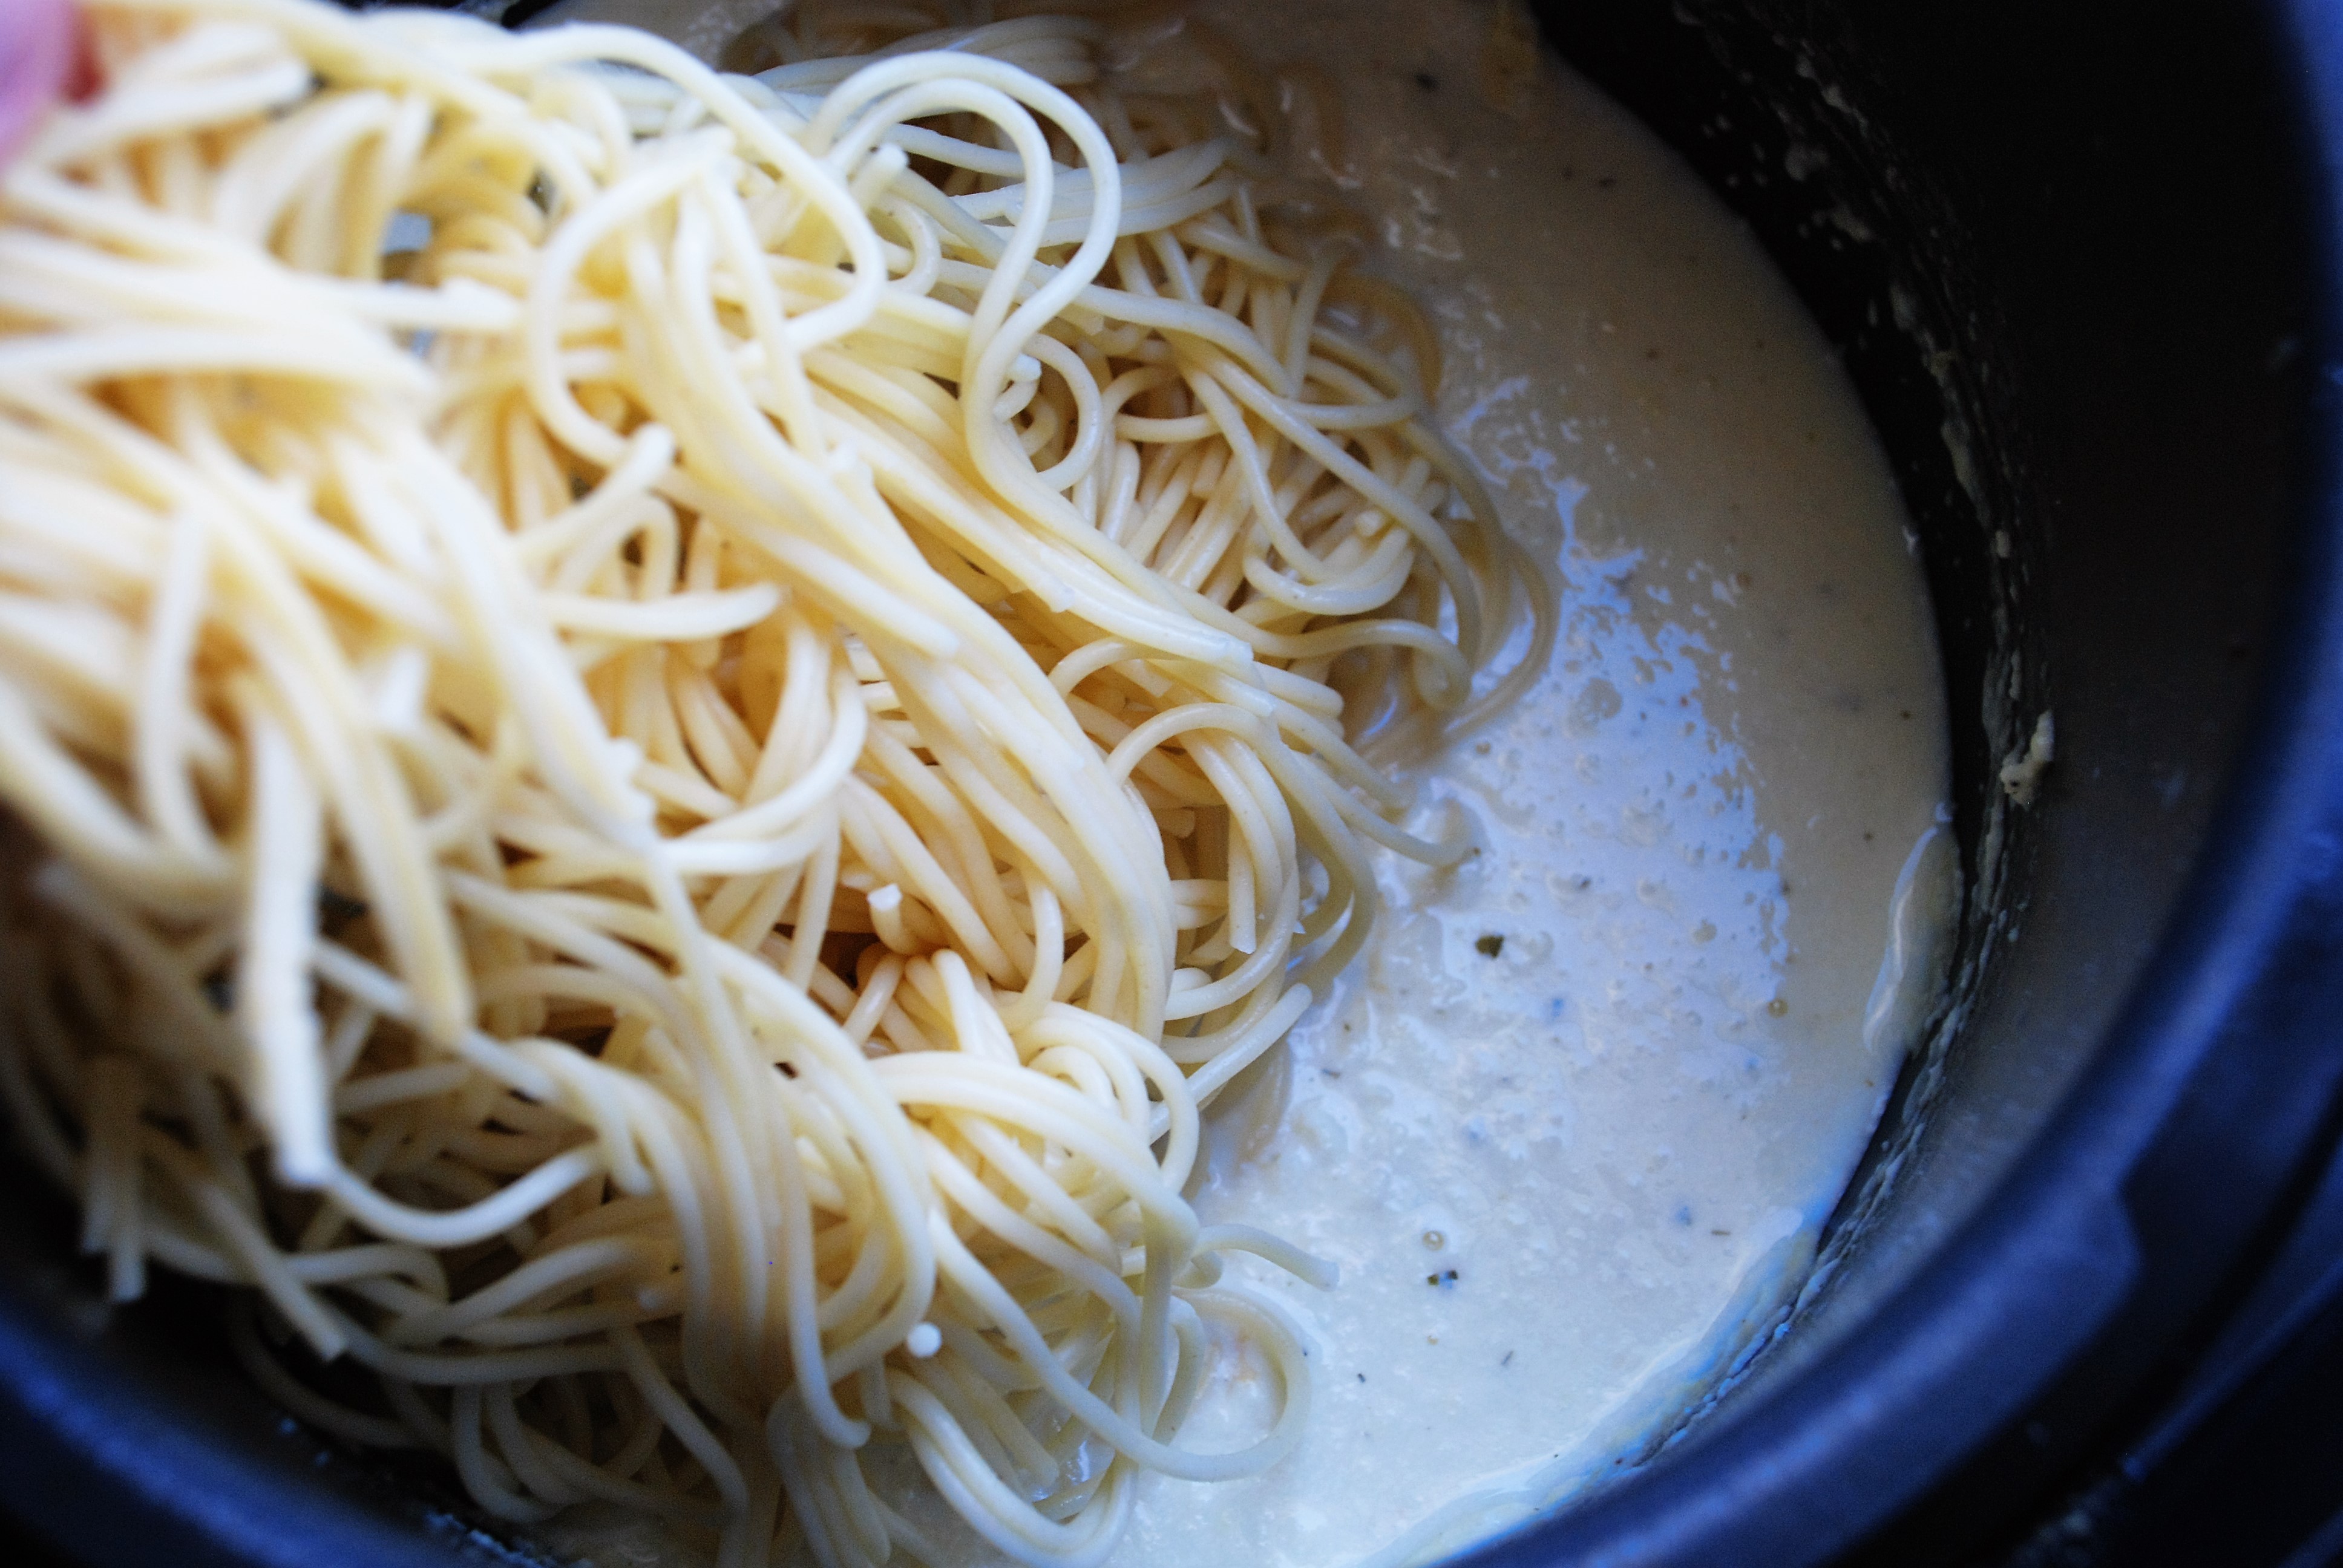 Щипцами переложите спагетти в мультиварку с соусом, перемешайте. Соус станет густым в сочетании со спагетти